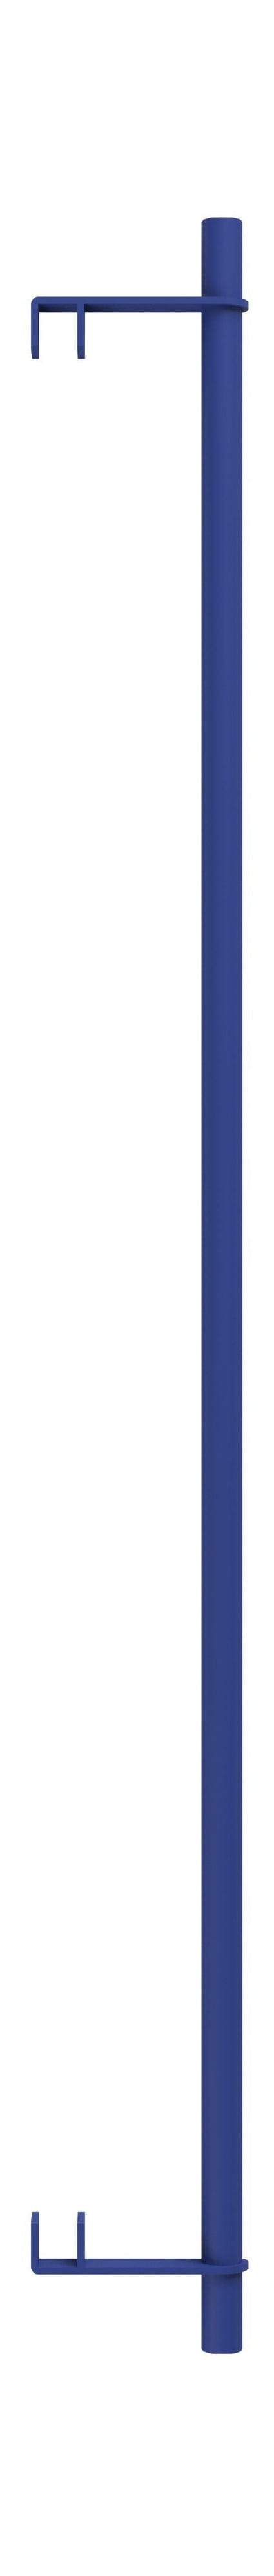 Moebe Hyllyjärjestelmä/seinähyllyt vaatekaula 85 cm, syvä sininen